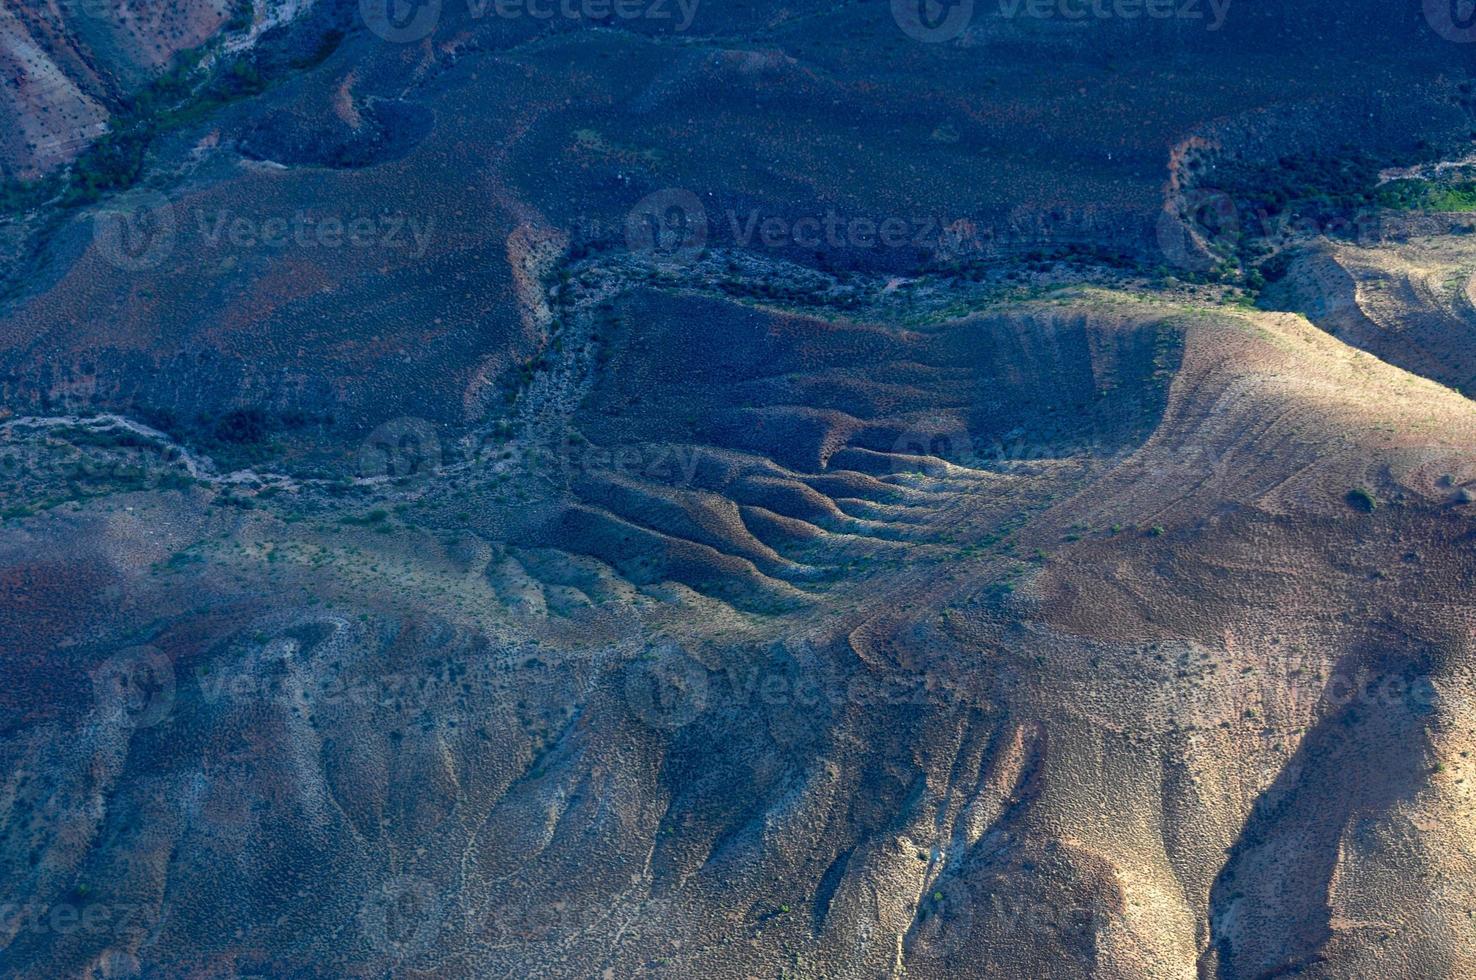 parque nacional del gran cañón desde el aire. foto